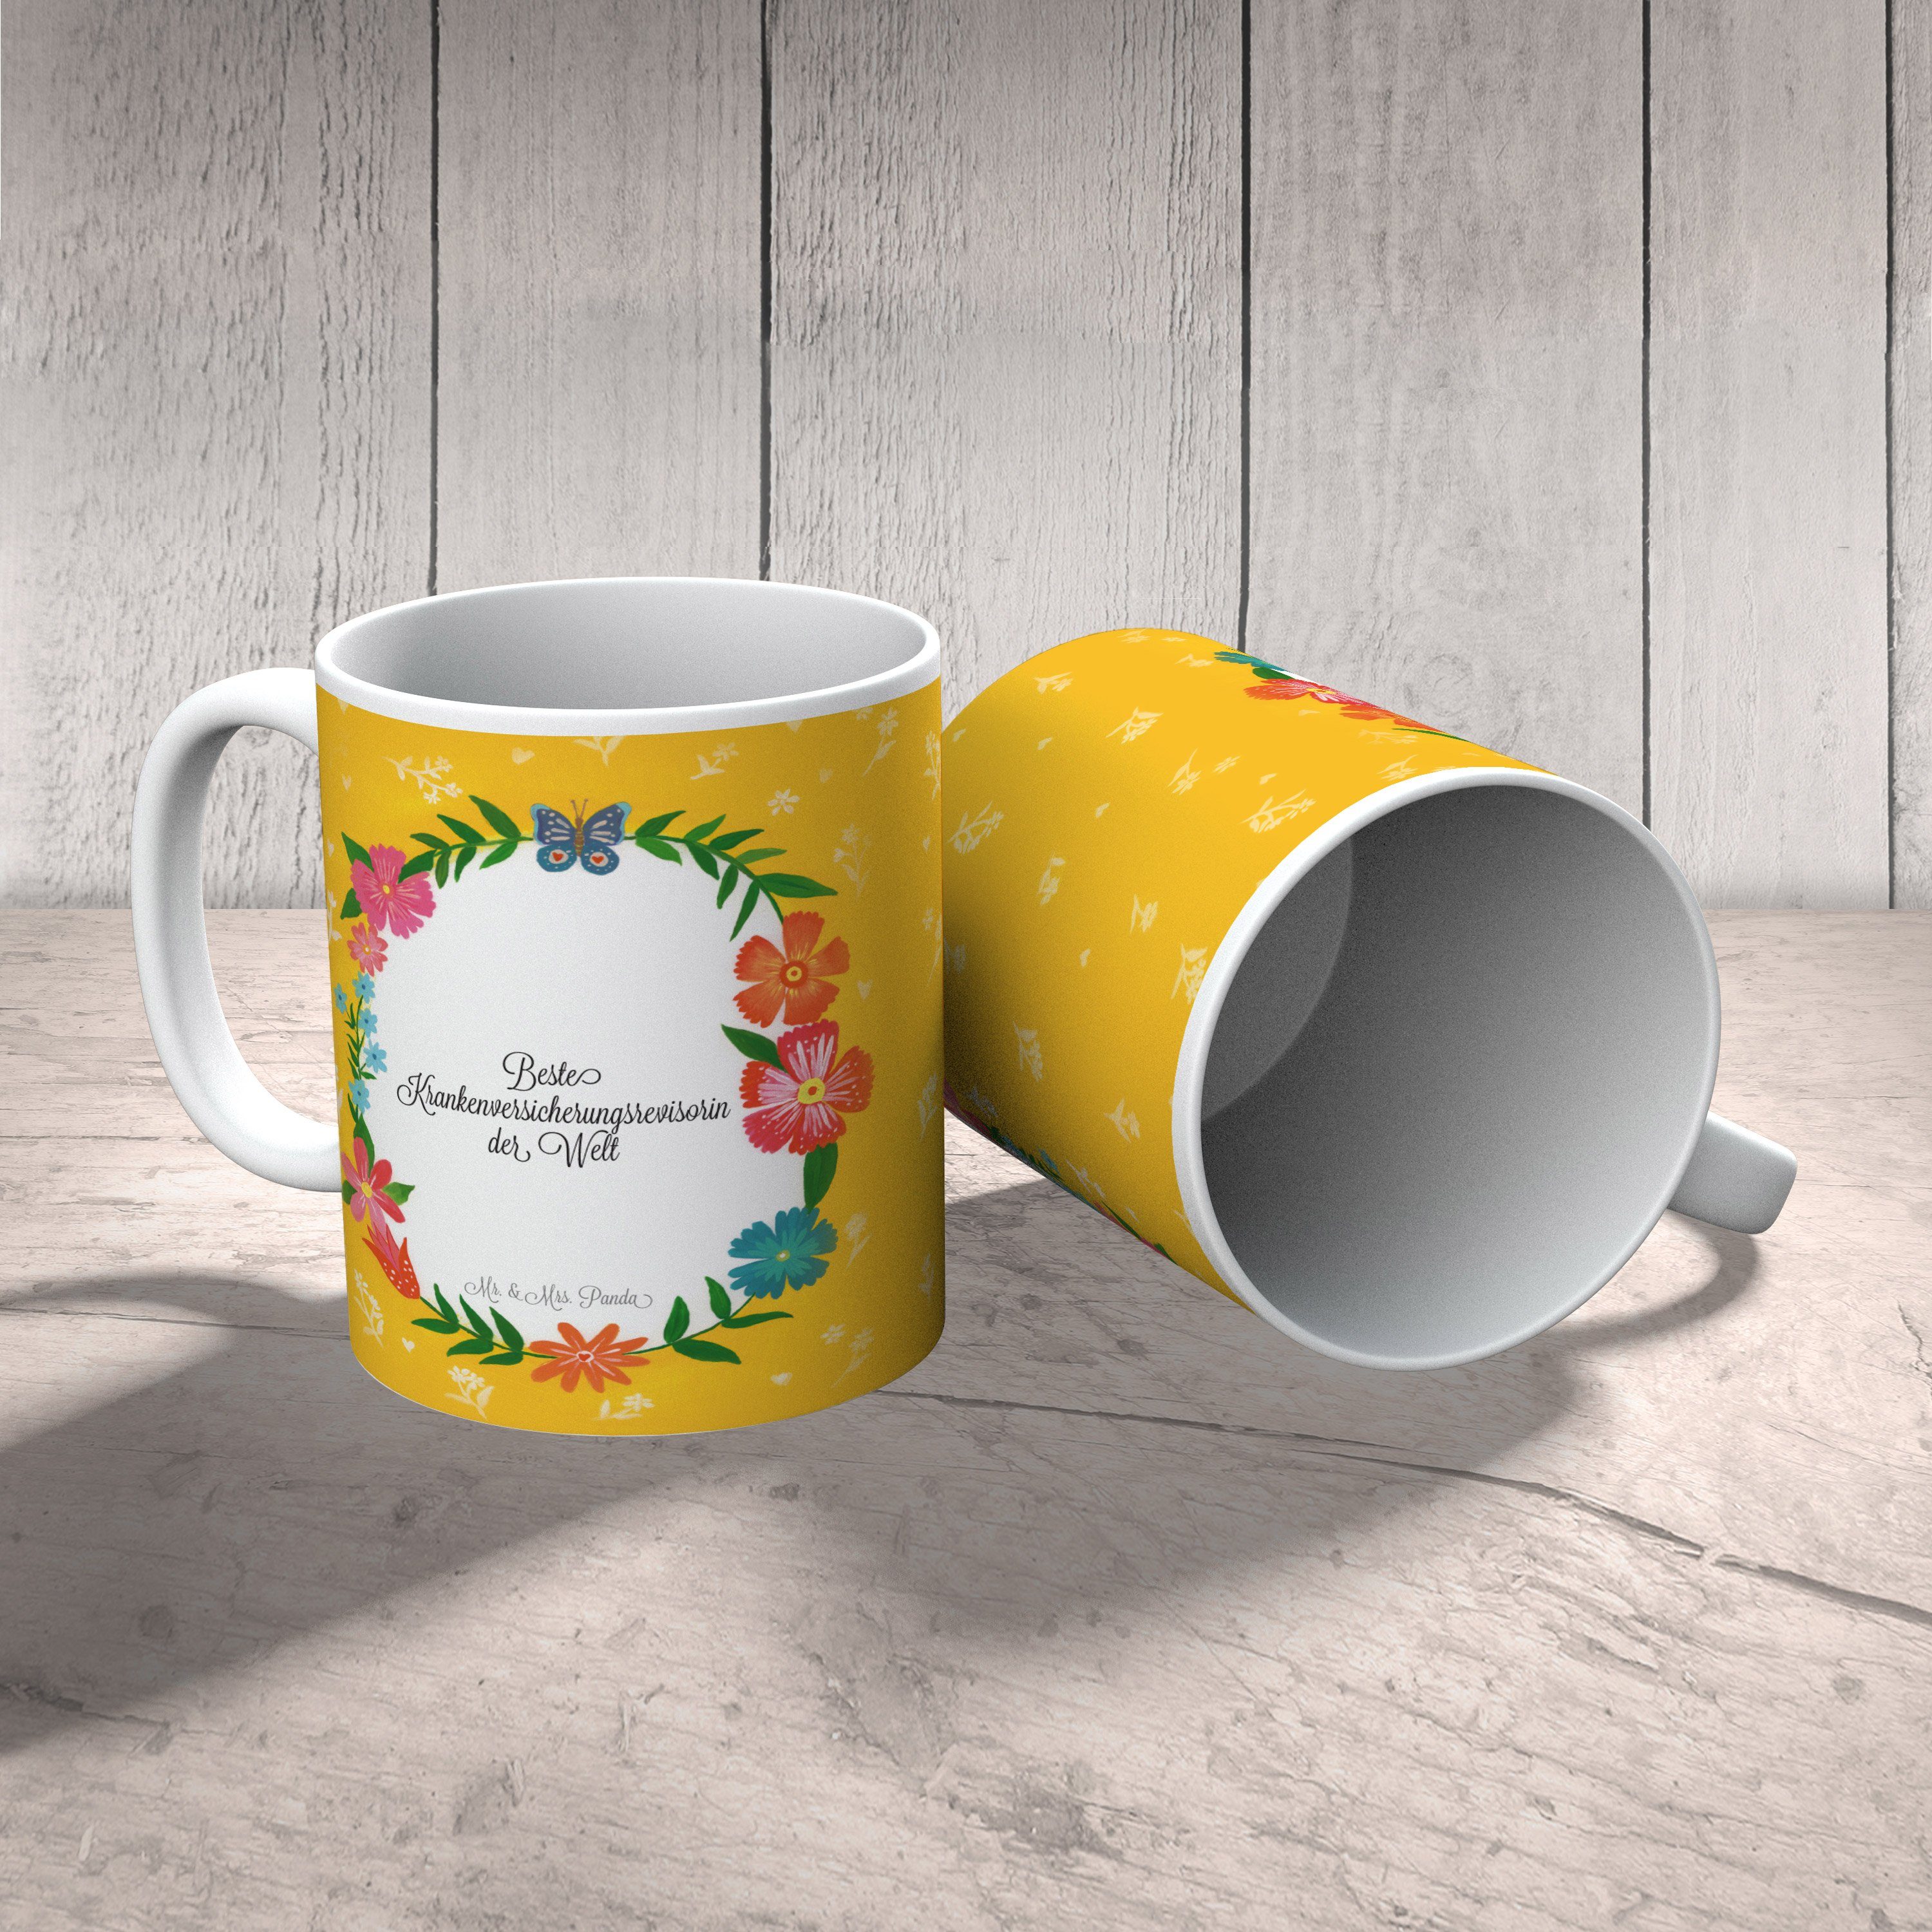 Tasse Keramik Geschenk, - Mr. Berufsausbildung, Panda Mrs. Geschenk, Krankenversicherungsrevisorin &